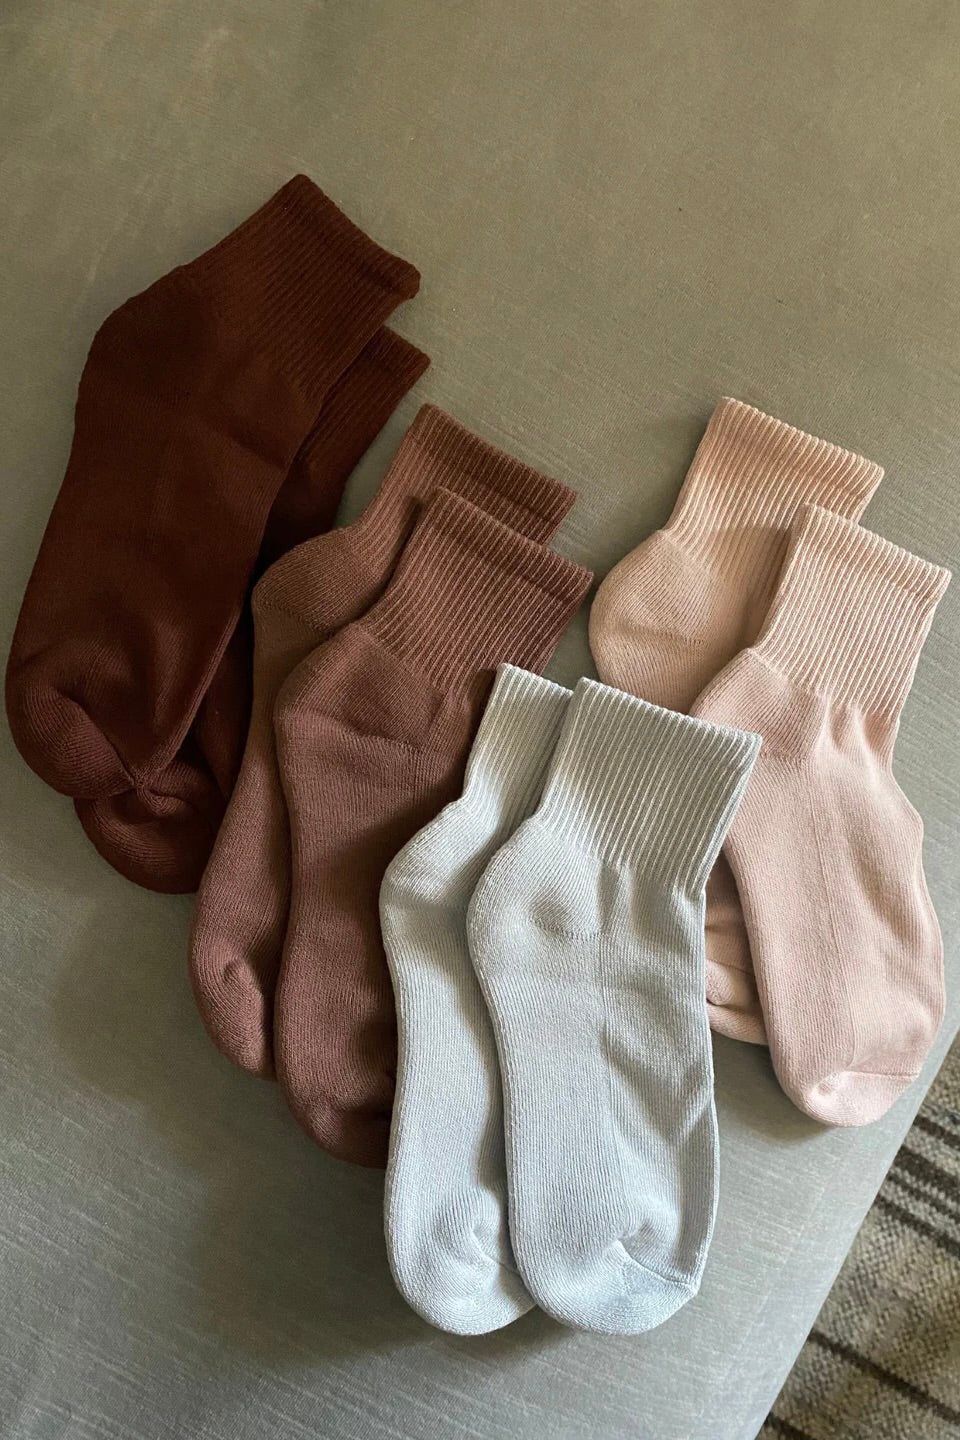 Nat + Noor Cotton Blend Ankle Socks / Brick